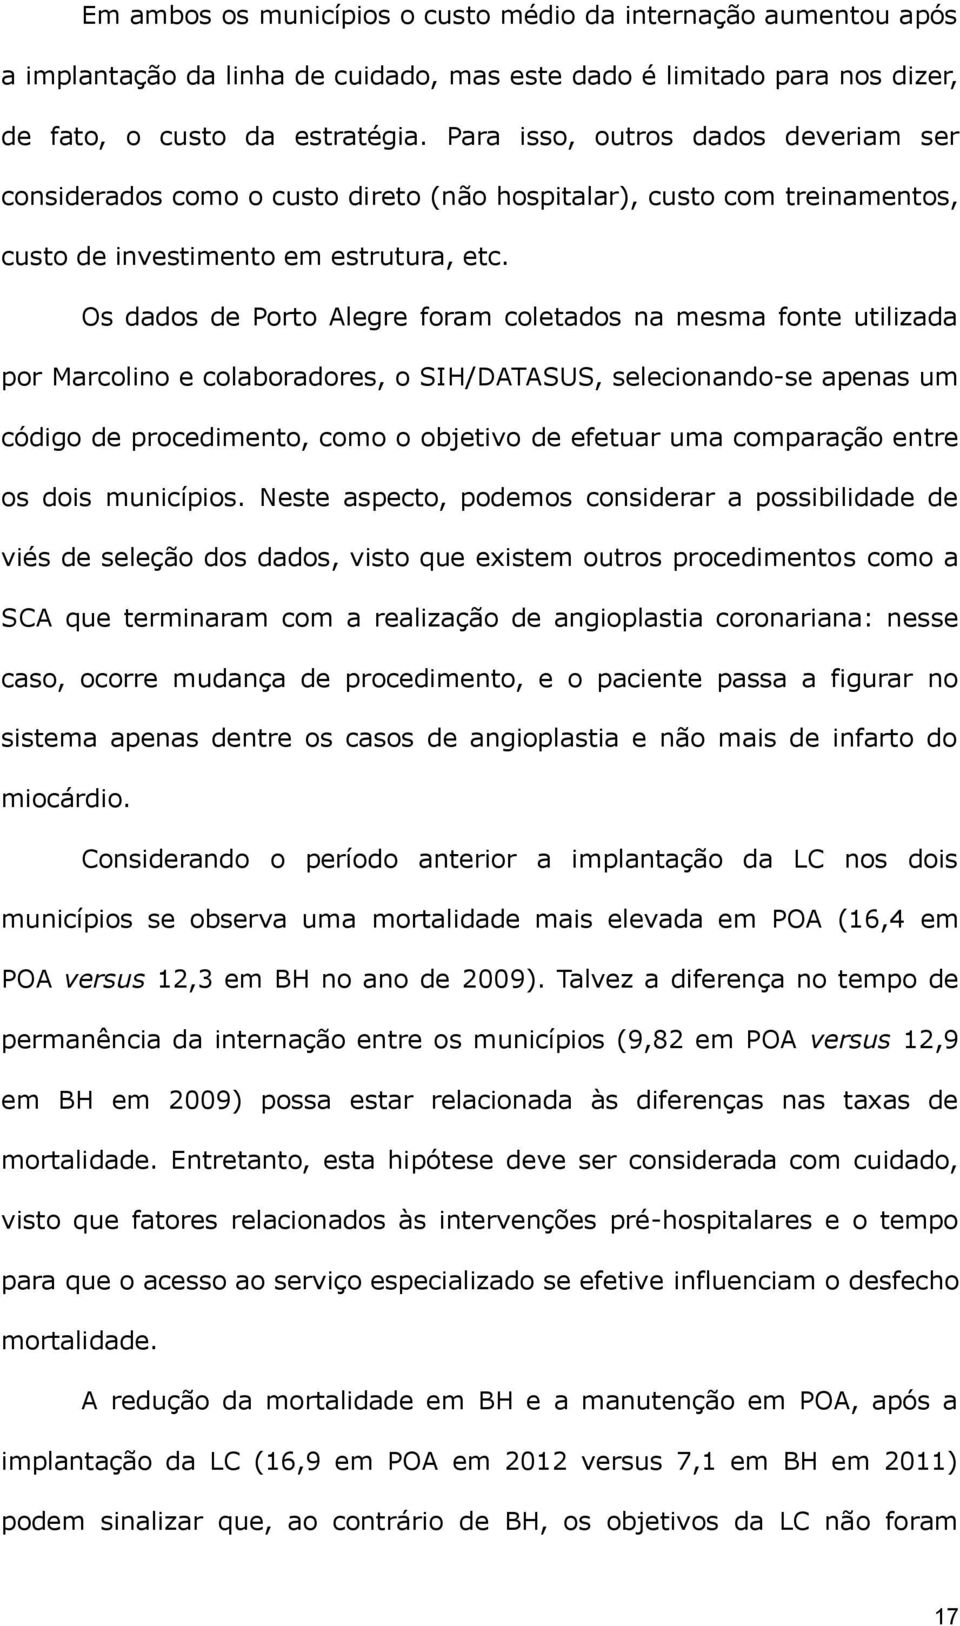 Os dados de Porto Alegre foram coletados na mesma fonte utilizada por Marcolino e colaboradores, o SIH/DATASUS, selecionando-se apenas um código de procedimento, como o objetivo de efetuar uma